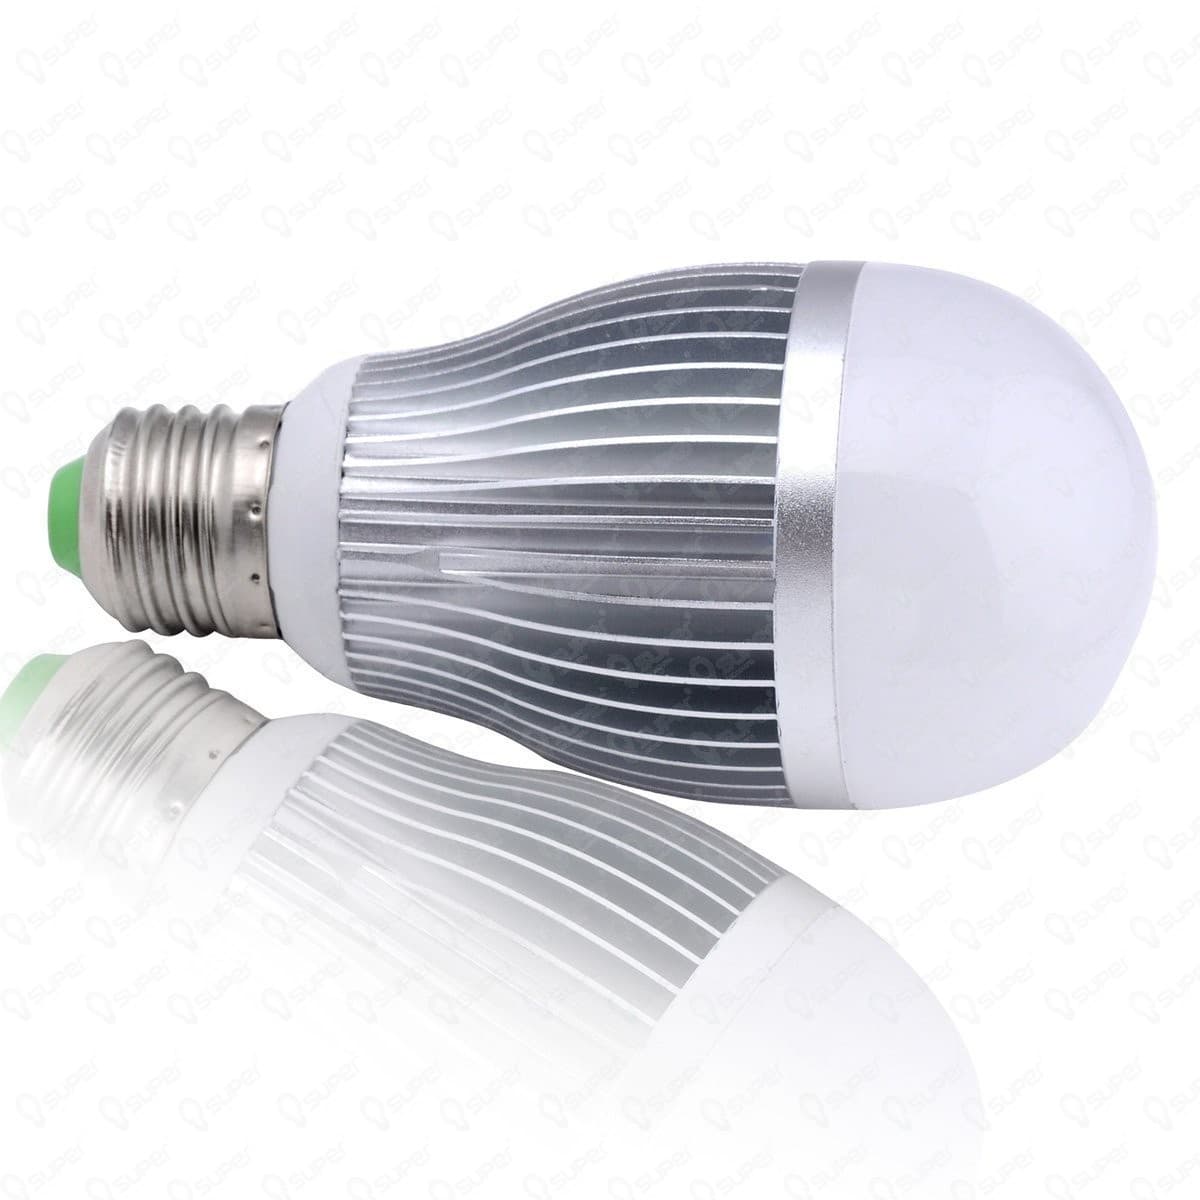 Screw based Light Bulbs